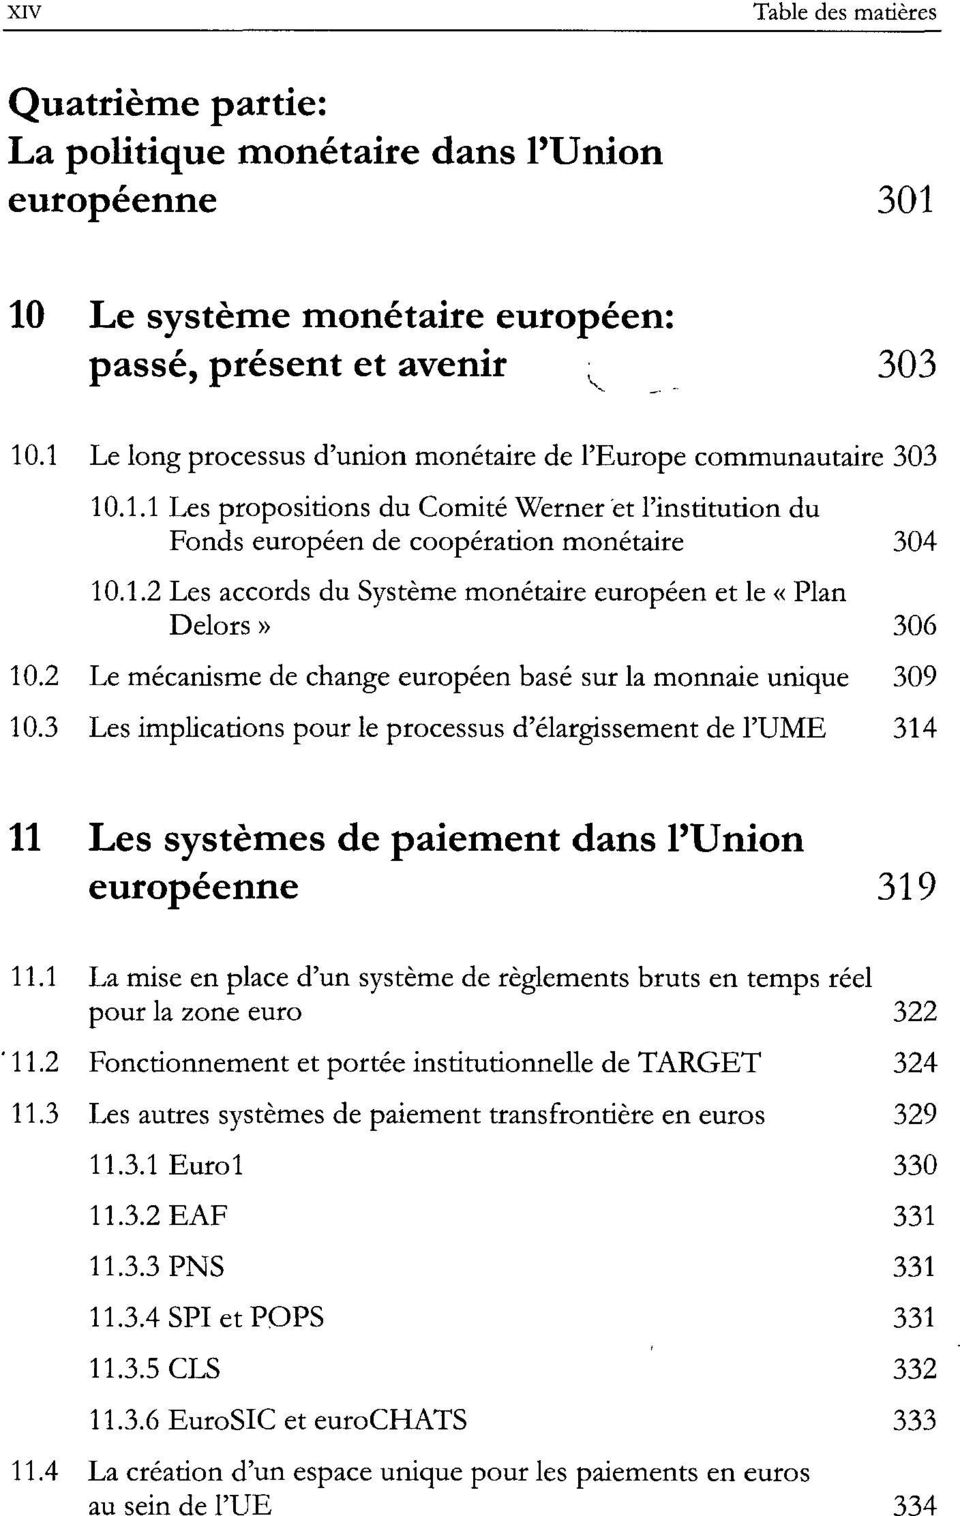 2 Le mécanisme de change européen basé sur la monnaie unique 309 10.3 Les implications pour le processus d'élargissement de l'ume 314 11 Les systèmes de paiement dans l'union européenne 319 11.